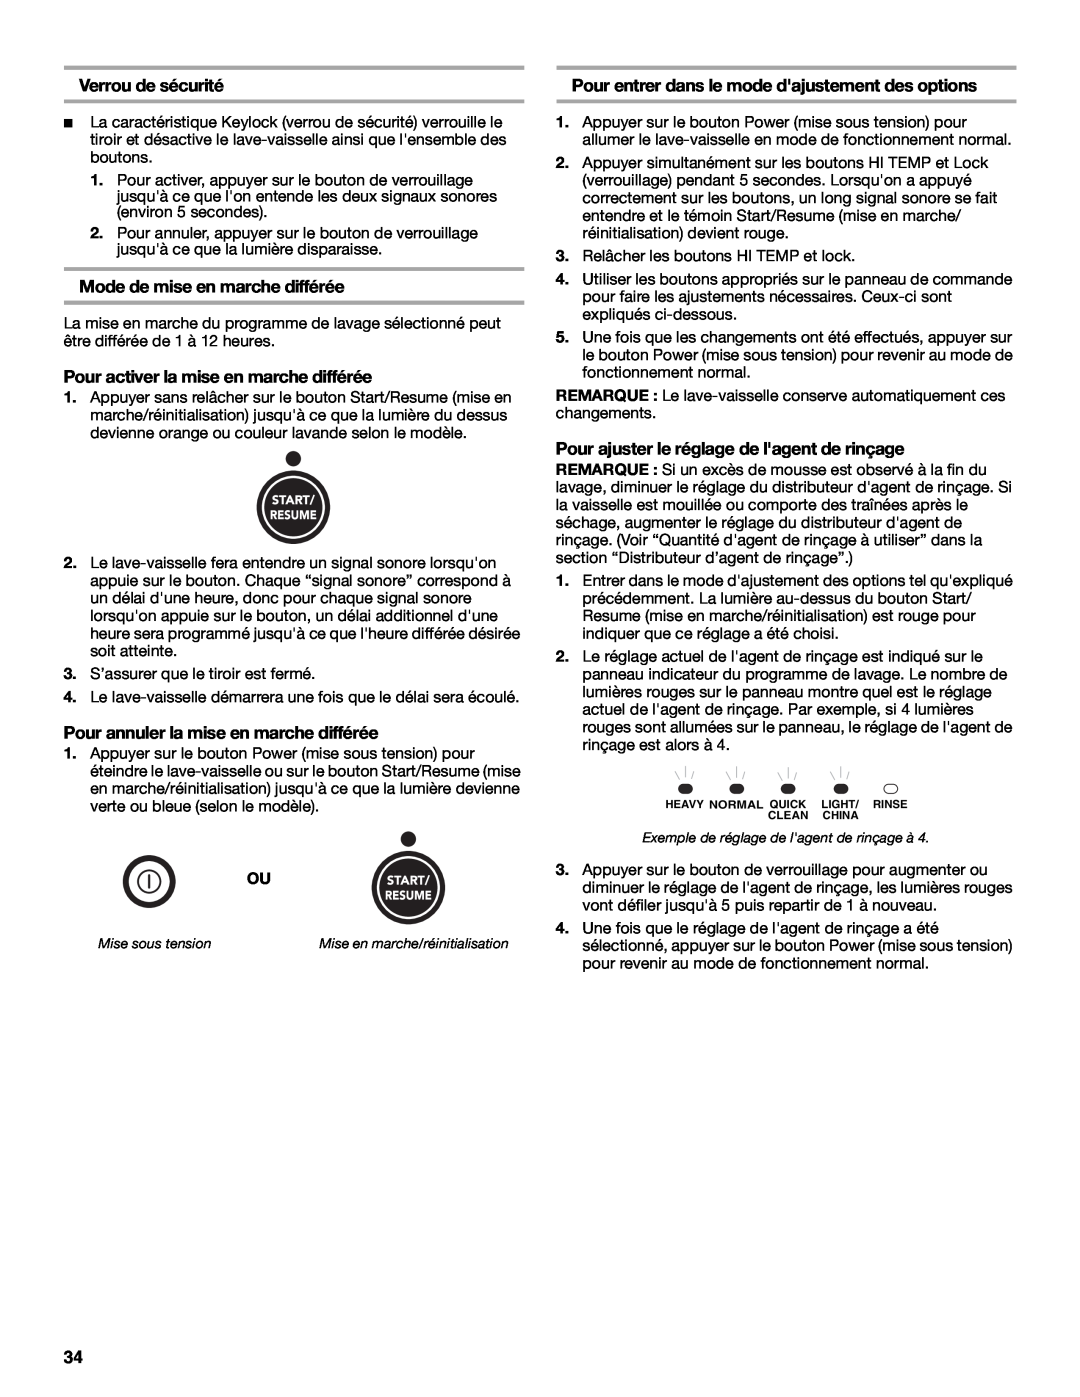 KitchenAid KUDD01DPPA manual Verrou de sécurité, Mode de mise en marche différée, Pour activer la mise en marche différée 